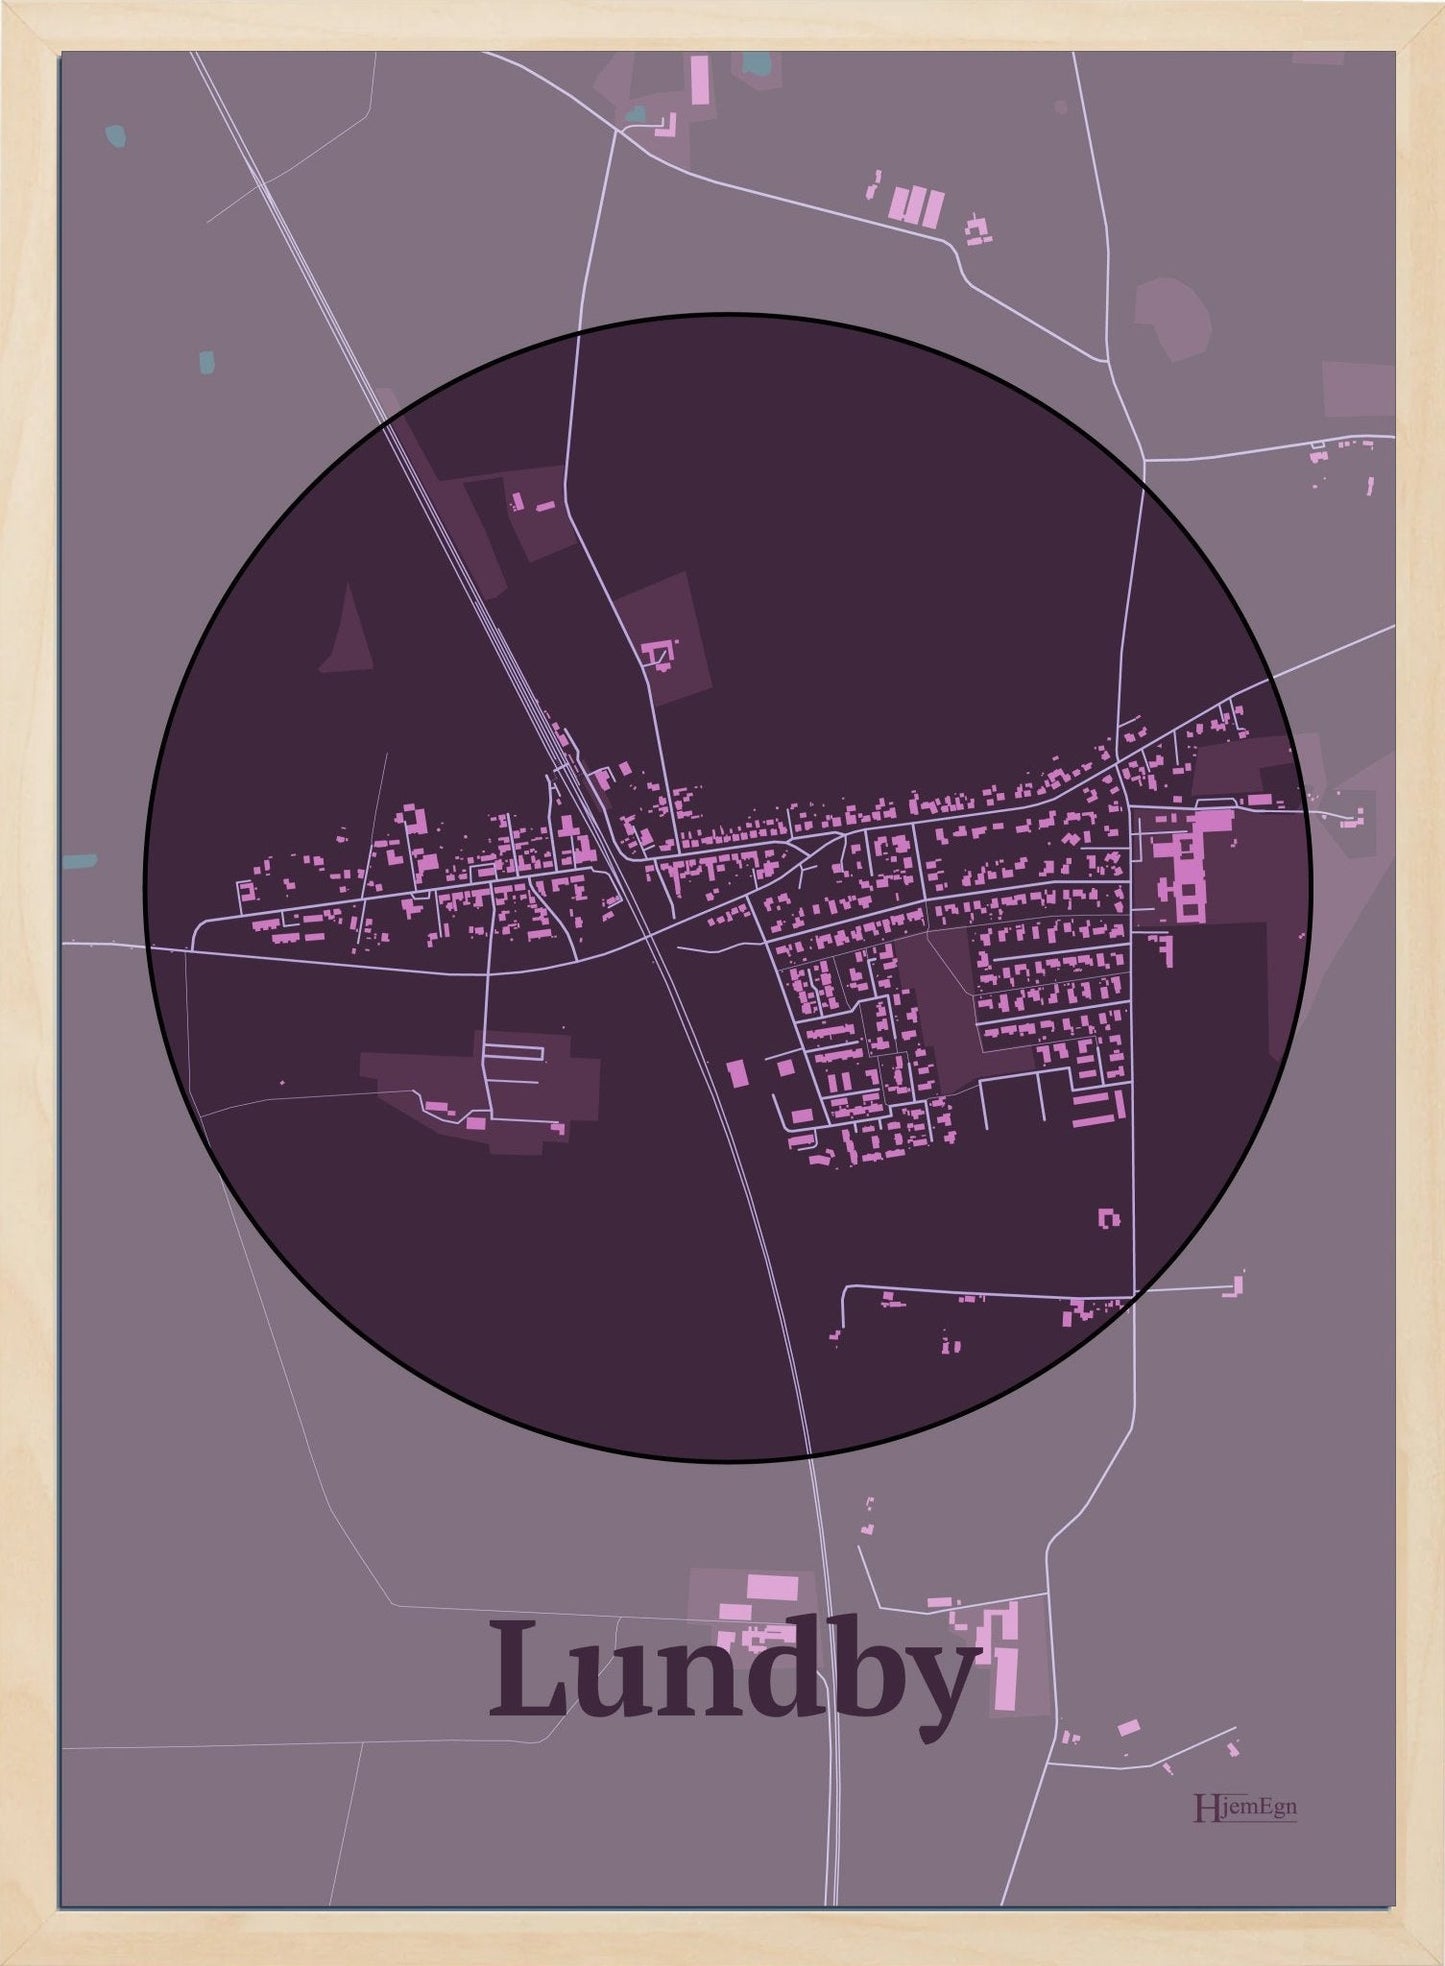 Lundby plakat i farve mørk rød og HjemEgn.dk design centrum. Design bykort for Lundby